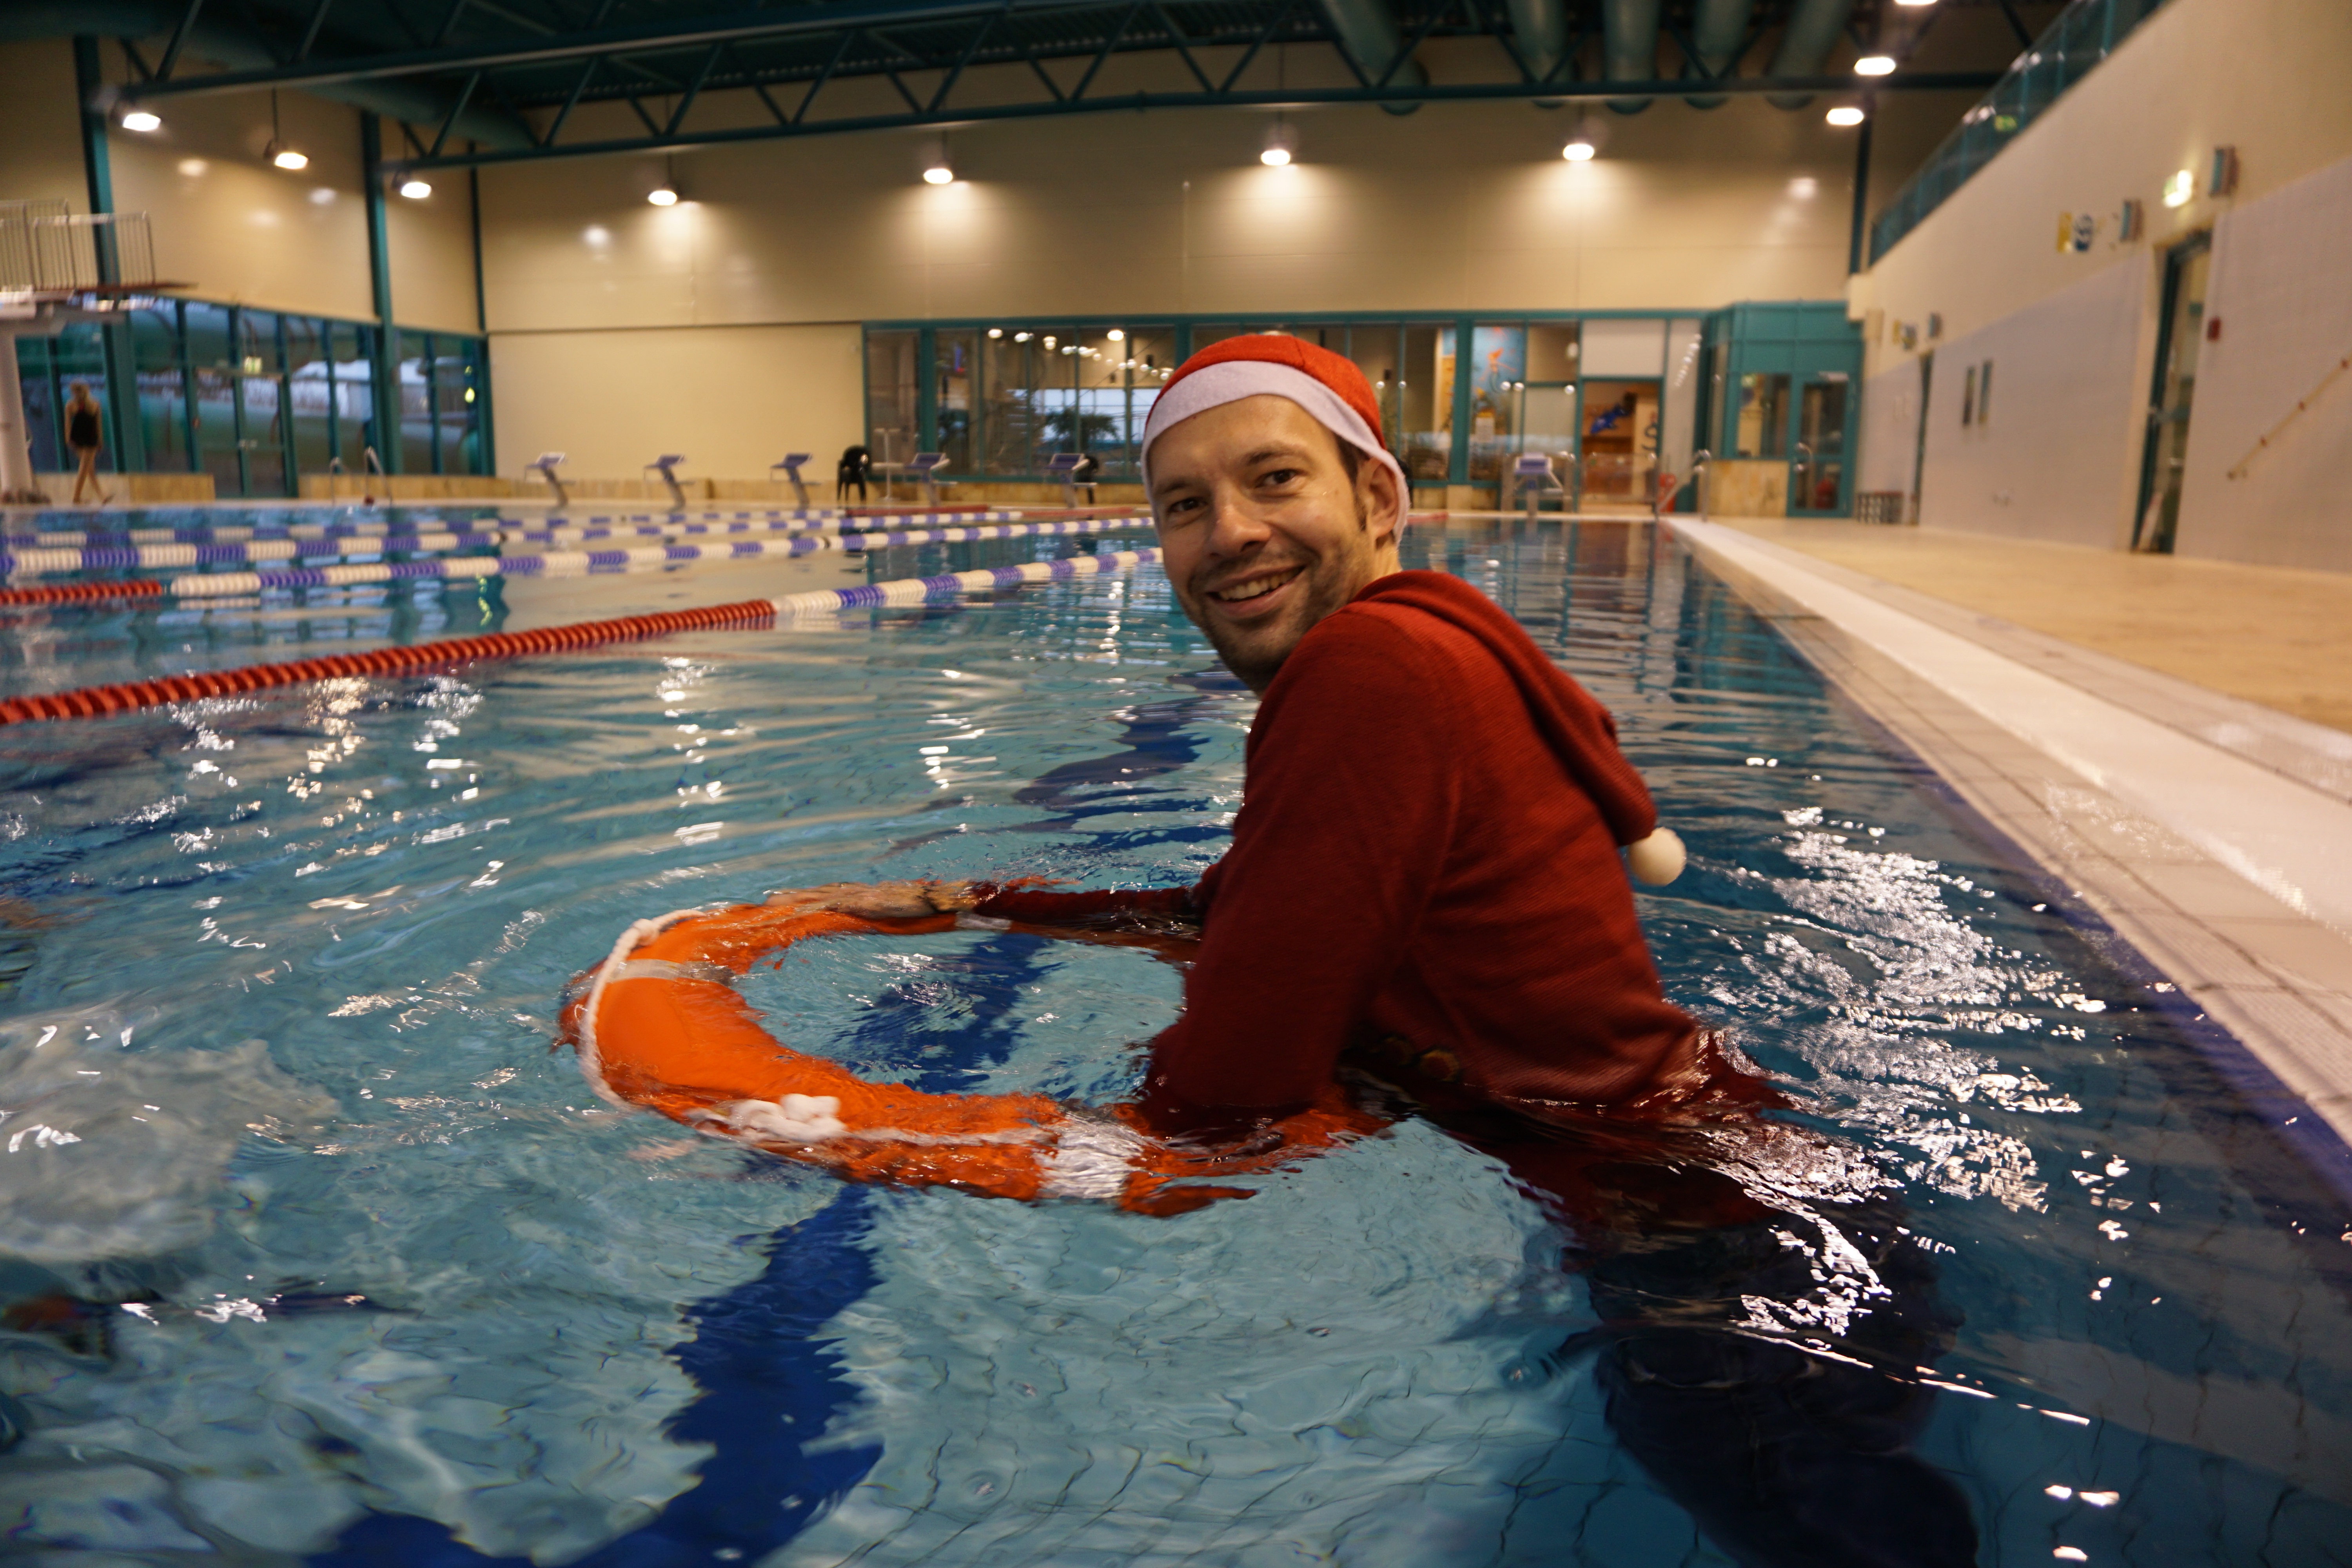 Kristof in Weihnachtsverkleidung hält sich lächelnd an einen Rettungsring im Schwimmbad.